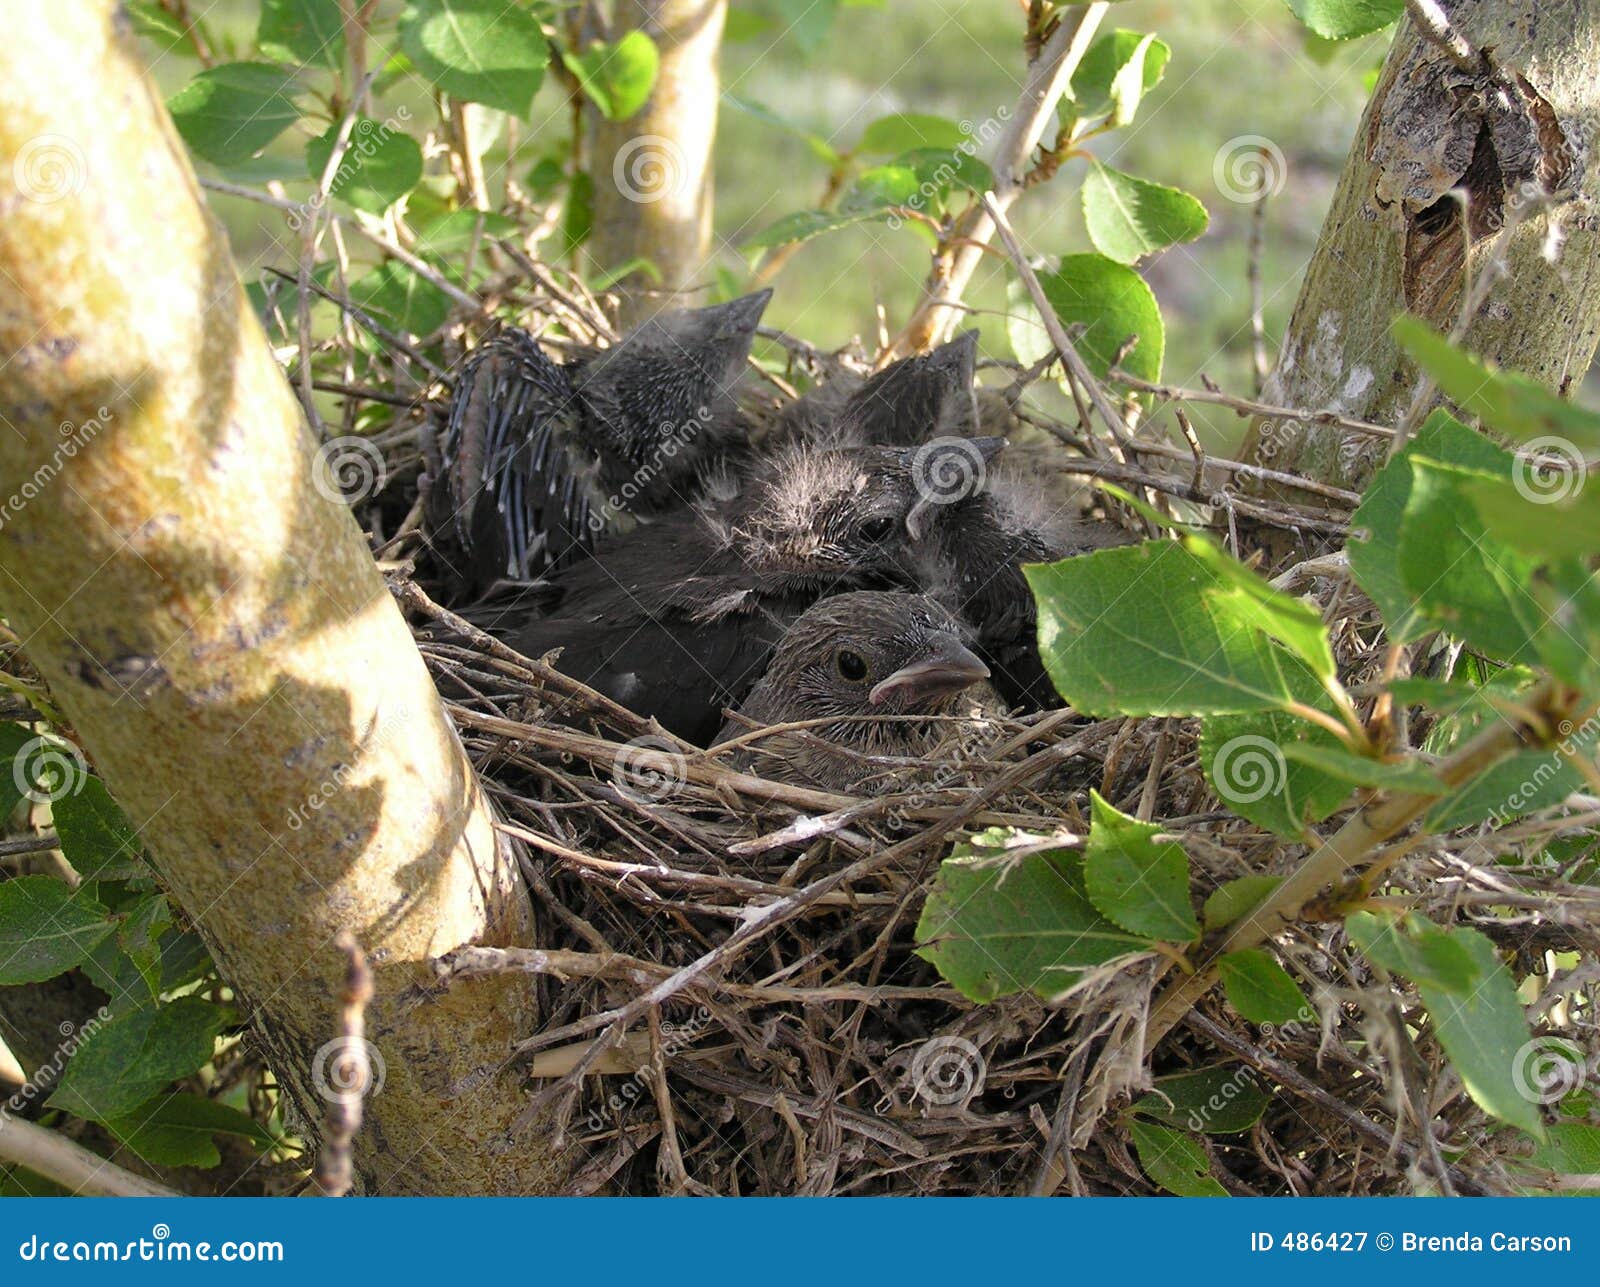 crowded nest